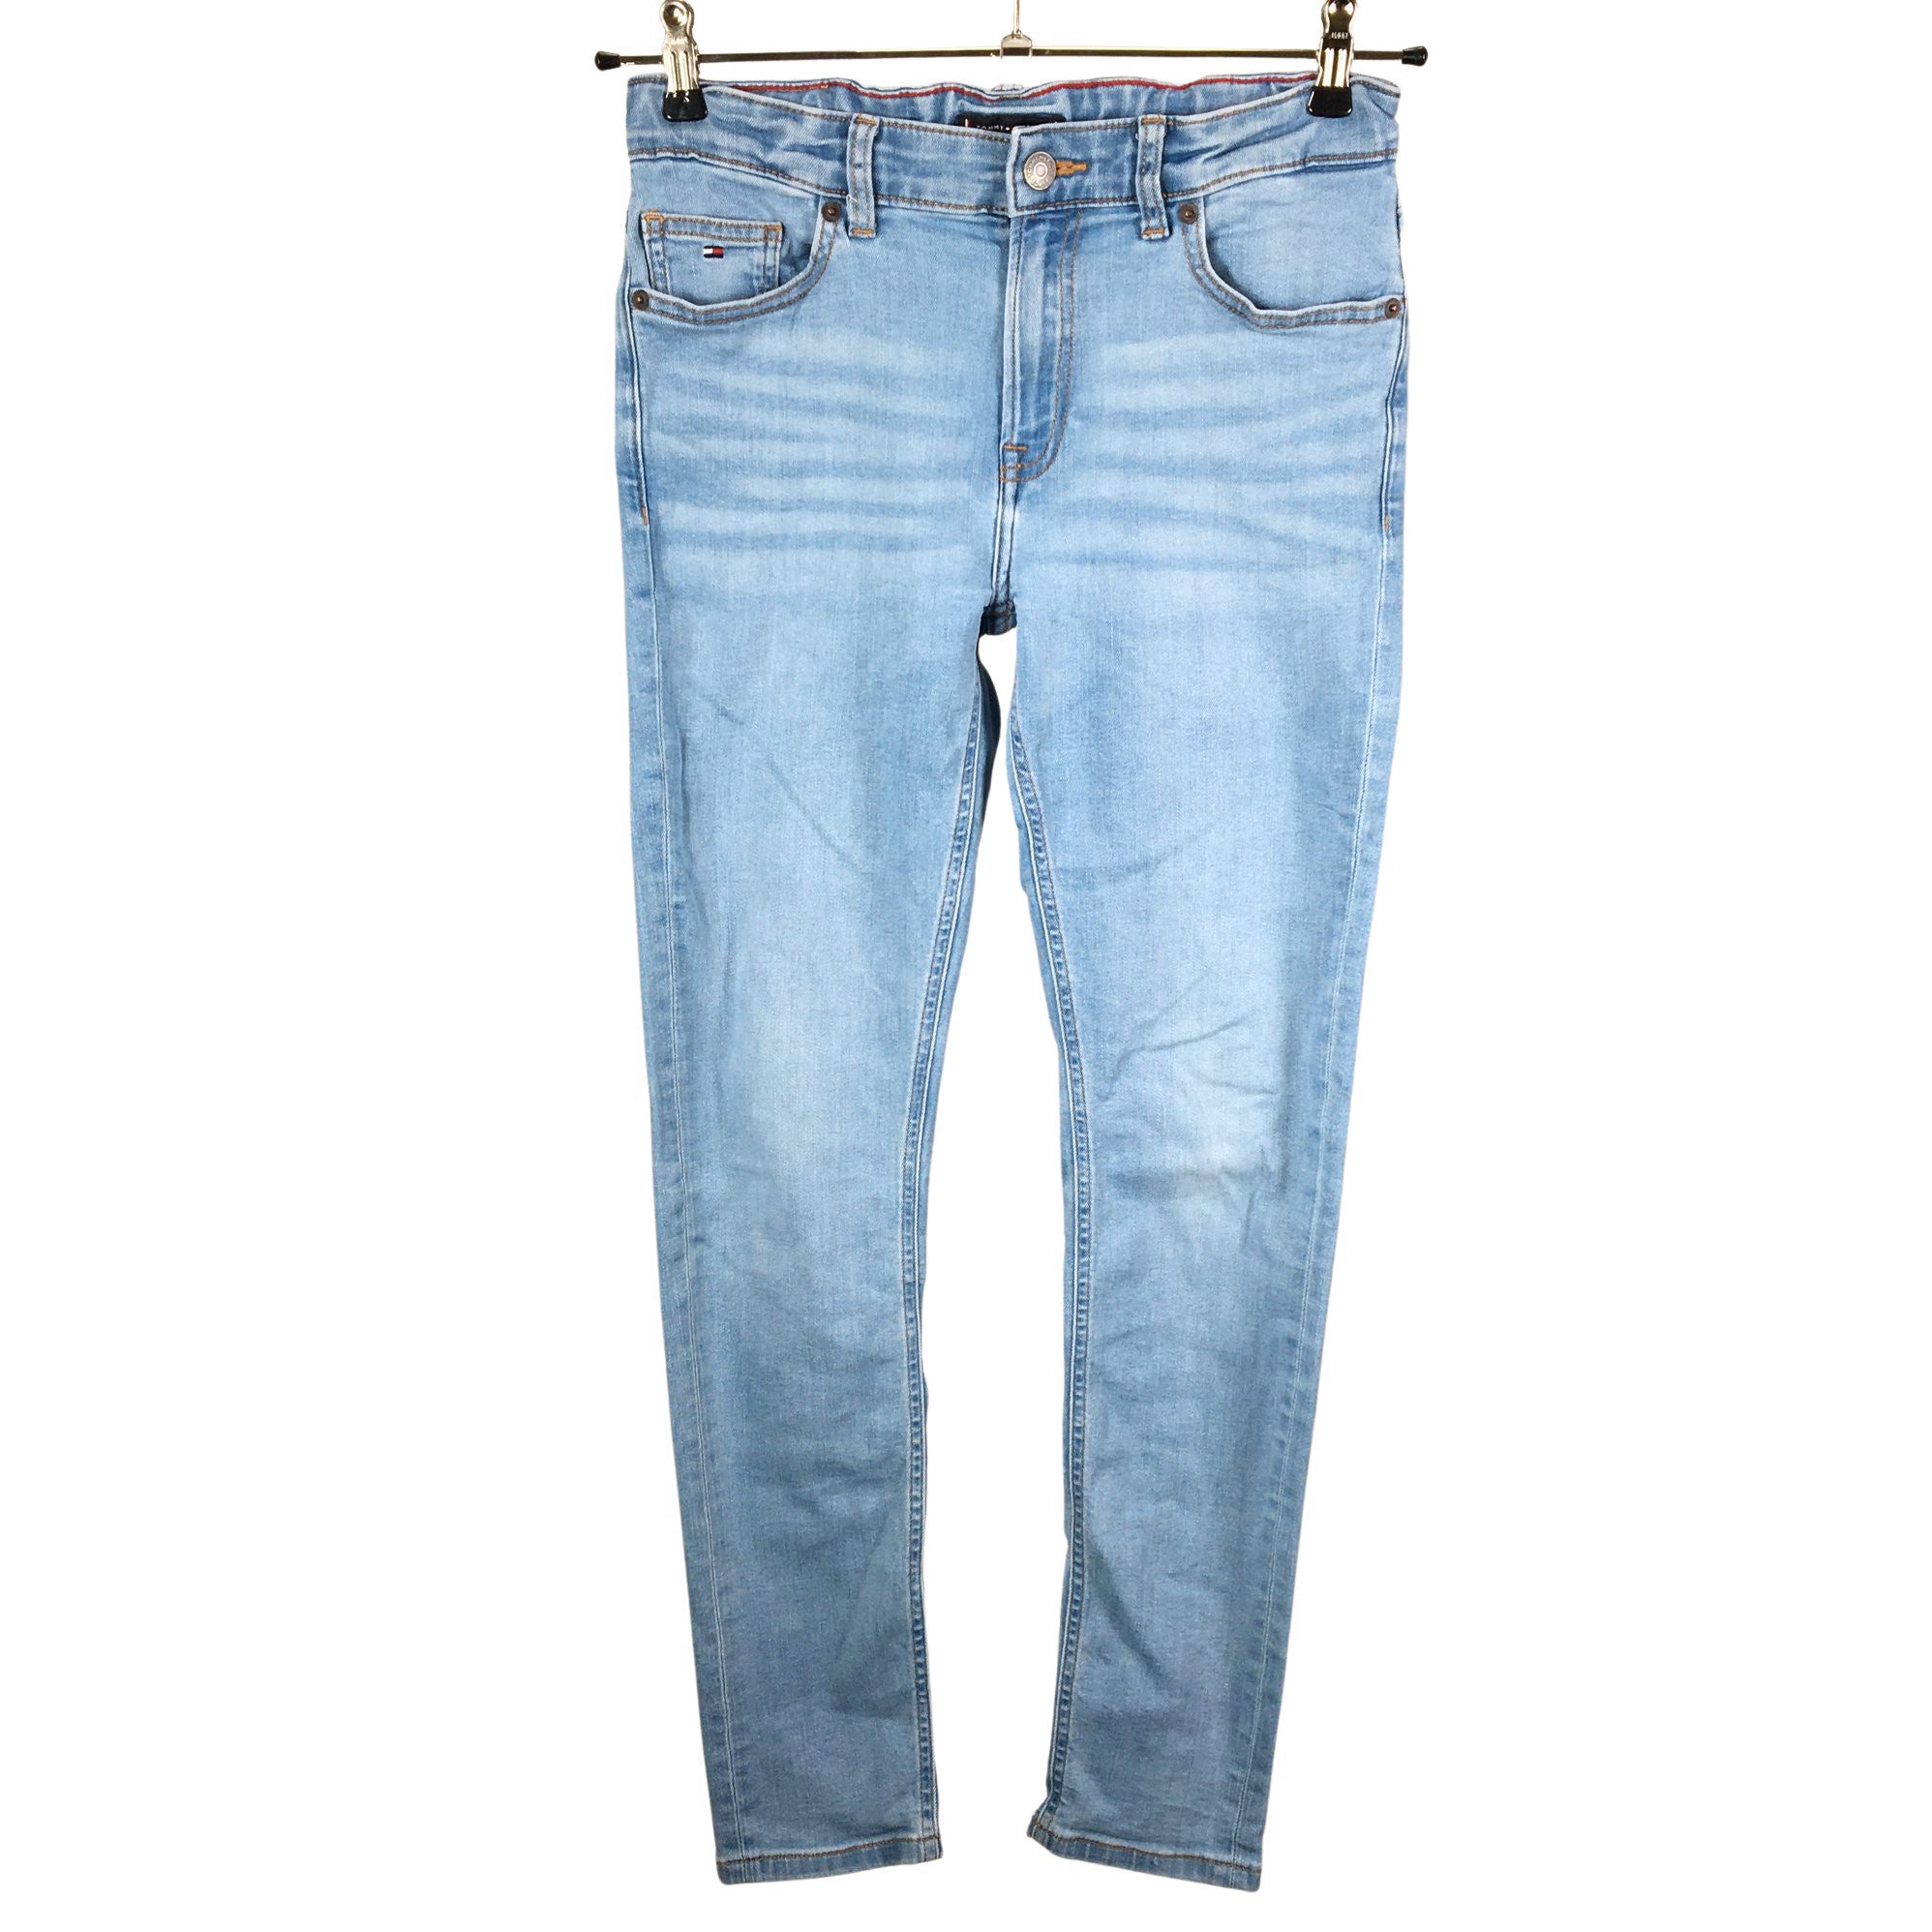 hegn Ledig højttaler Unisex Tommy Hilfiger Jeans, size 158 - 164 (Light blue) | Emmy